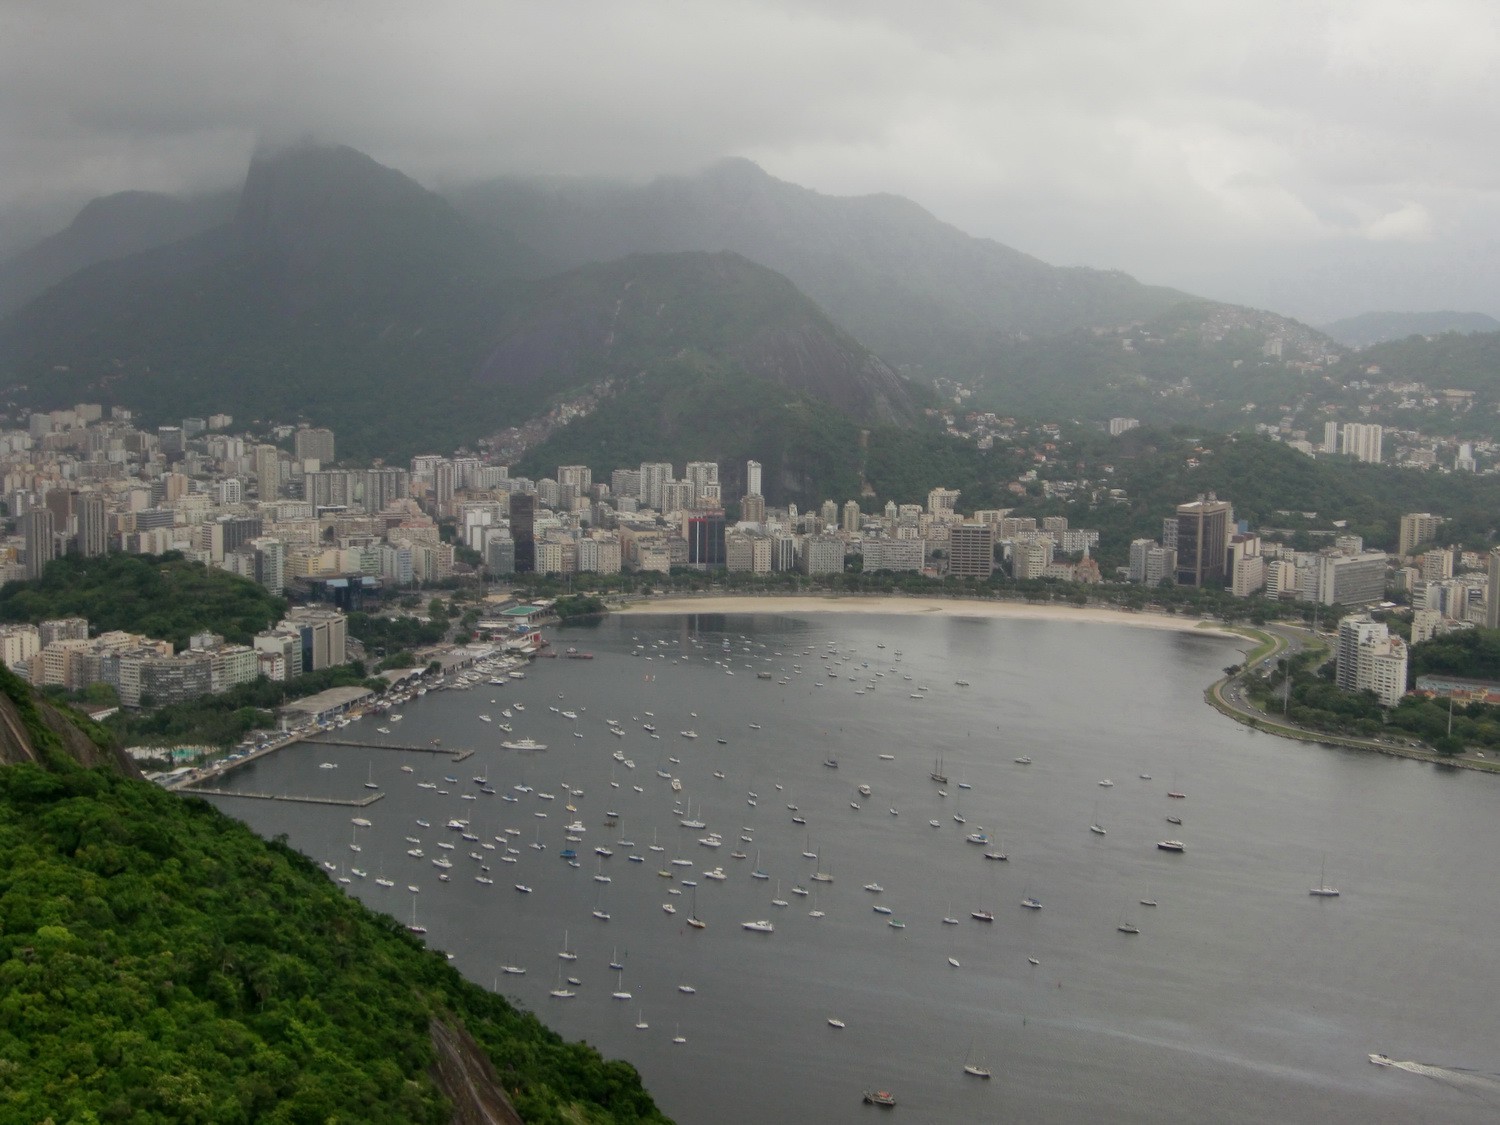 View to Rio's quarter Botafogo